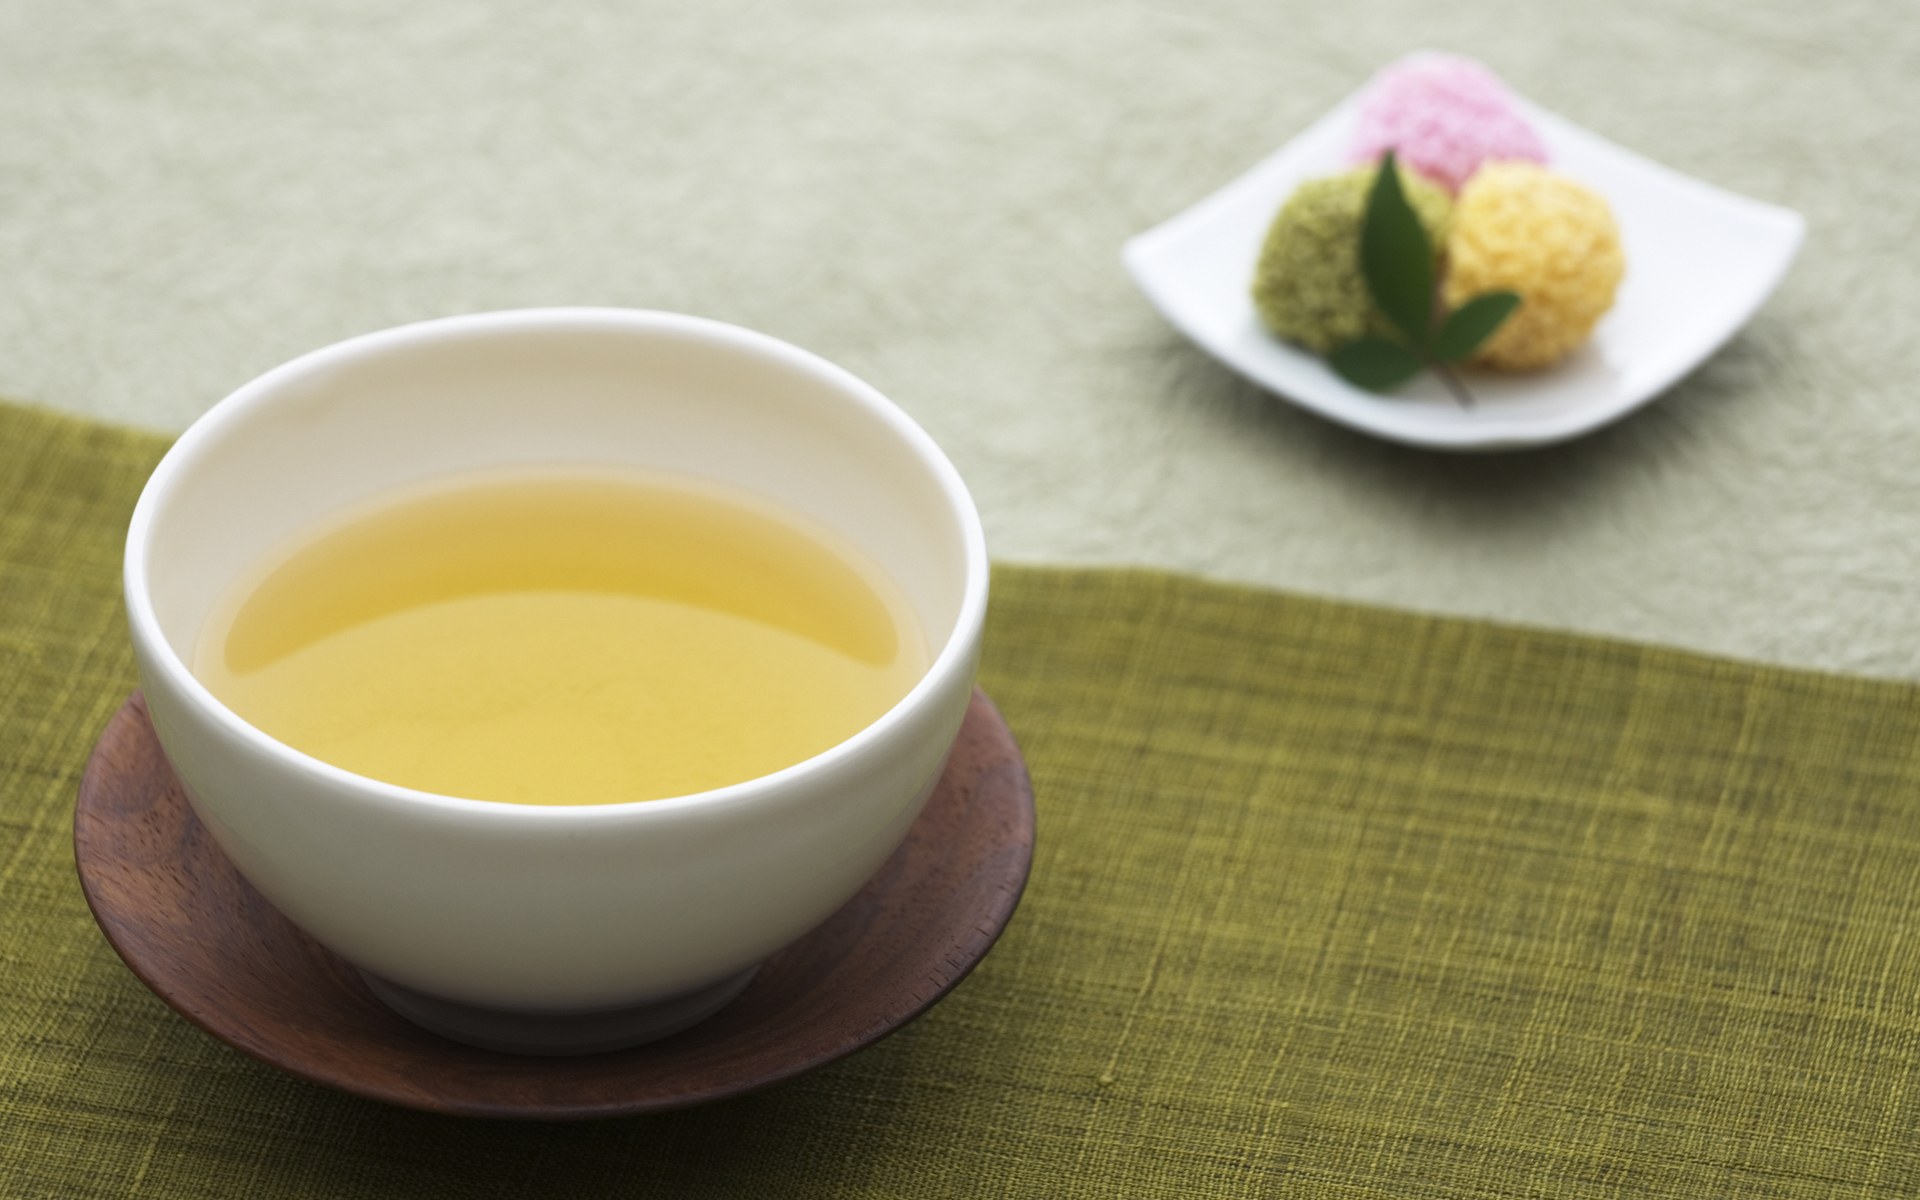 壁纸1920x1200 日本新茶图片 日本茶道摄影壁纸 日本茶道文化与健康饮品壁纸 日本茶道文化与健康饮品图片 日本茶道文化与健康饮品素材 摄影壁纸 摄影图库 摄影图片素材桌面壁纸